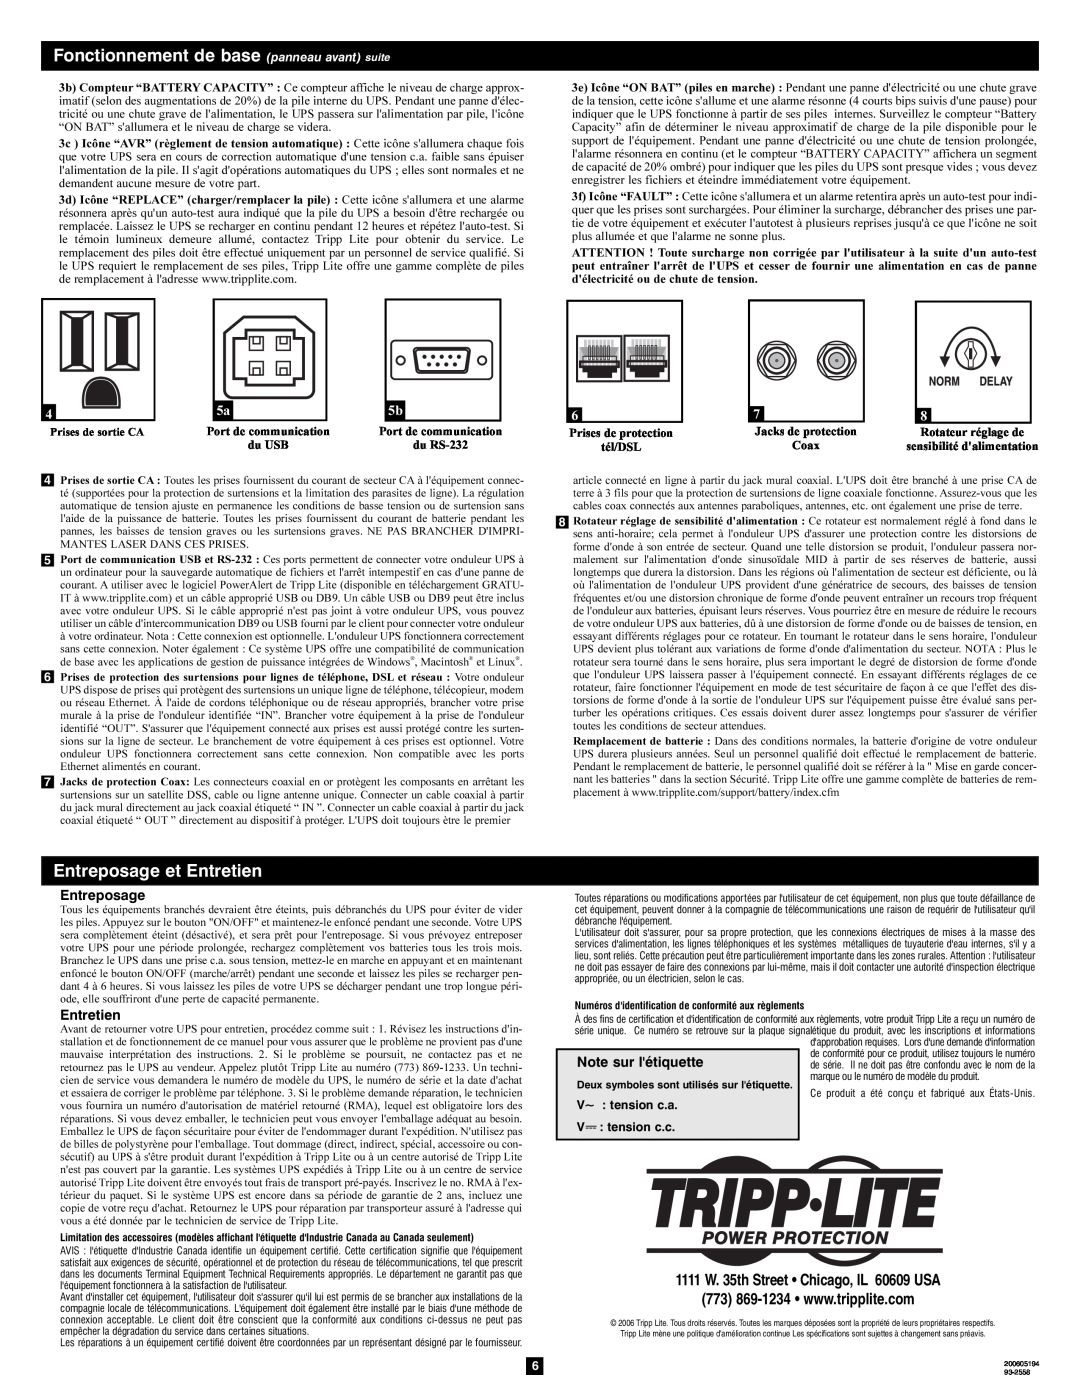 Tripp Lite OMNI1300LCD Fonctionnement de base panneau avant suite, Entreposage et Entretien, V~ tension c.a V tension c.c 